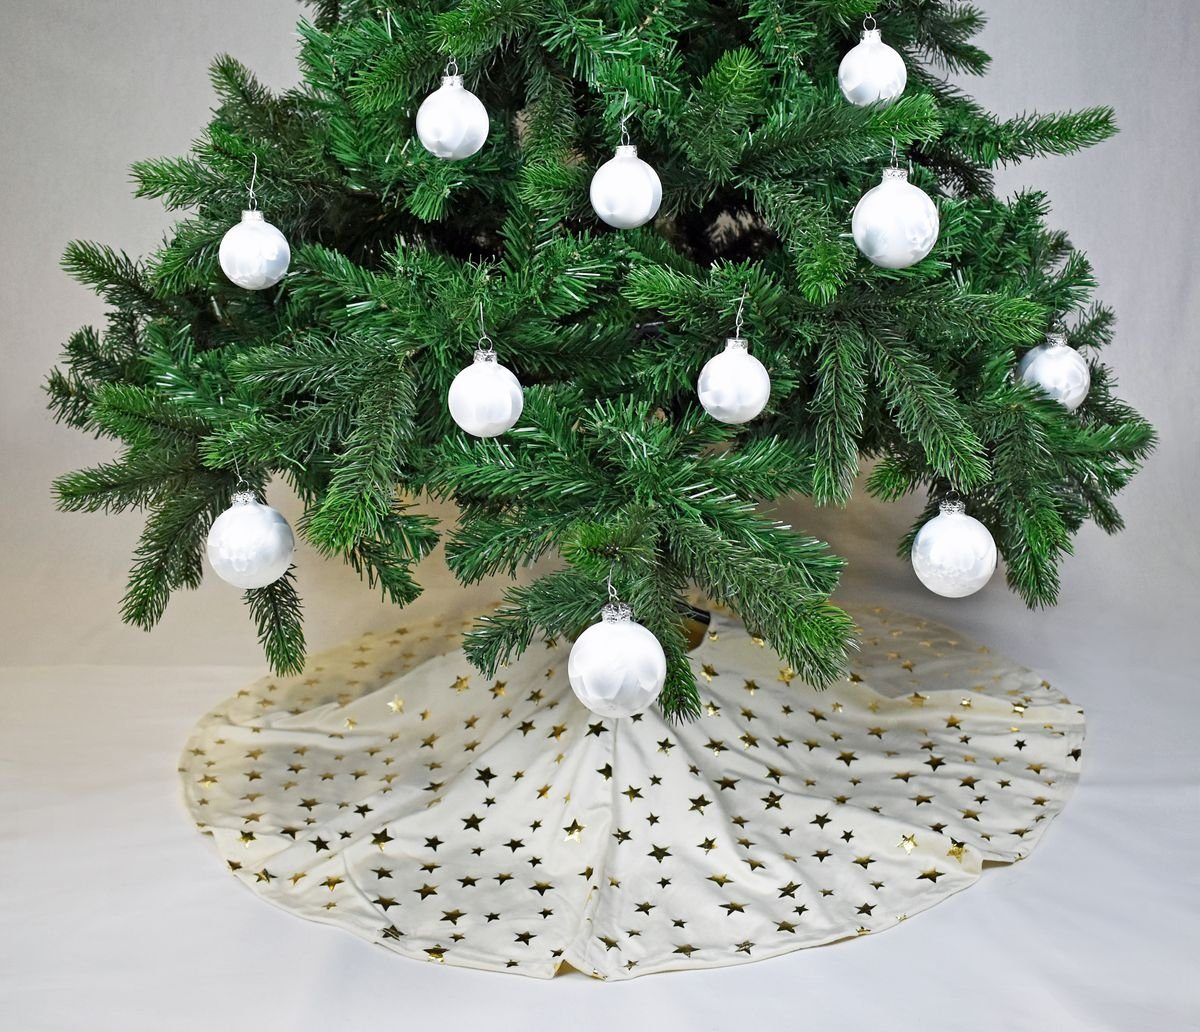 / Ø Baumteppich JACK Weihnachtsbaum Christbaumdecke Decke Beige Kuschlige Sterne Tannenbaum, 120cm Weihnachtsbaumdecke Unterlage Tannenbaumdecke Weihnachtsbaumdecke Rund